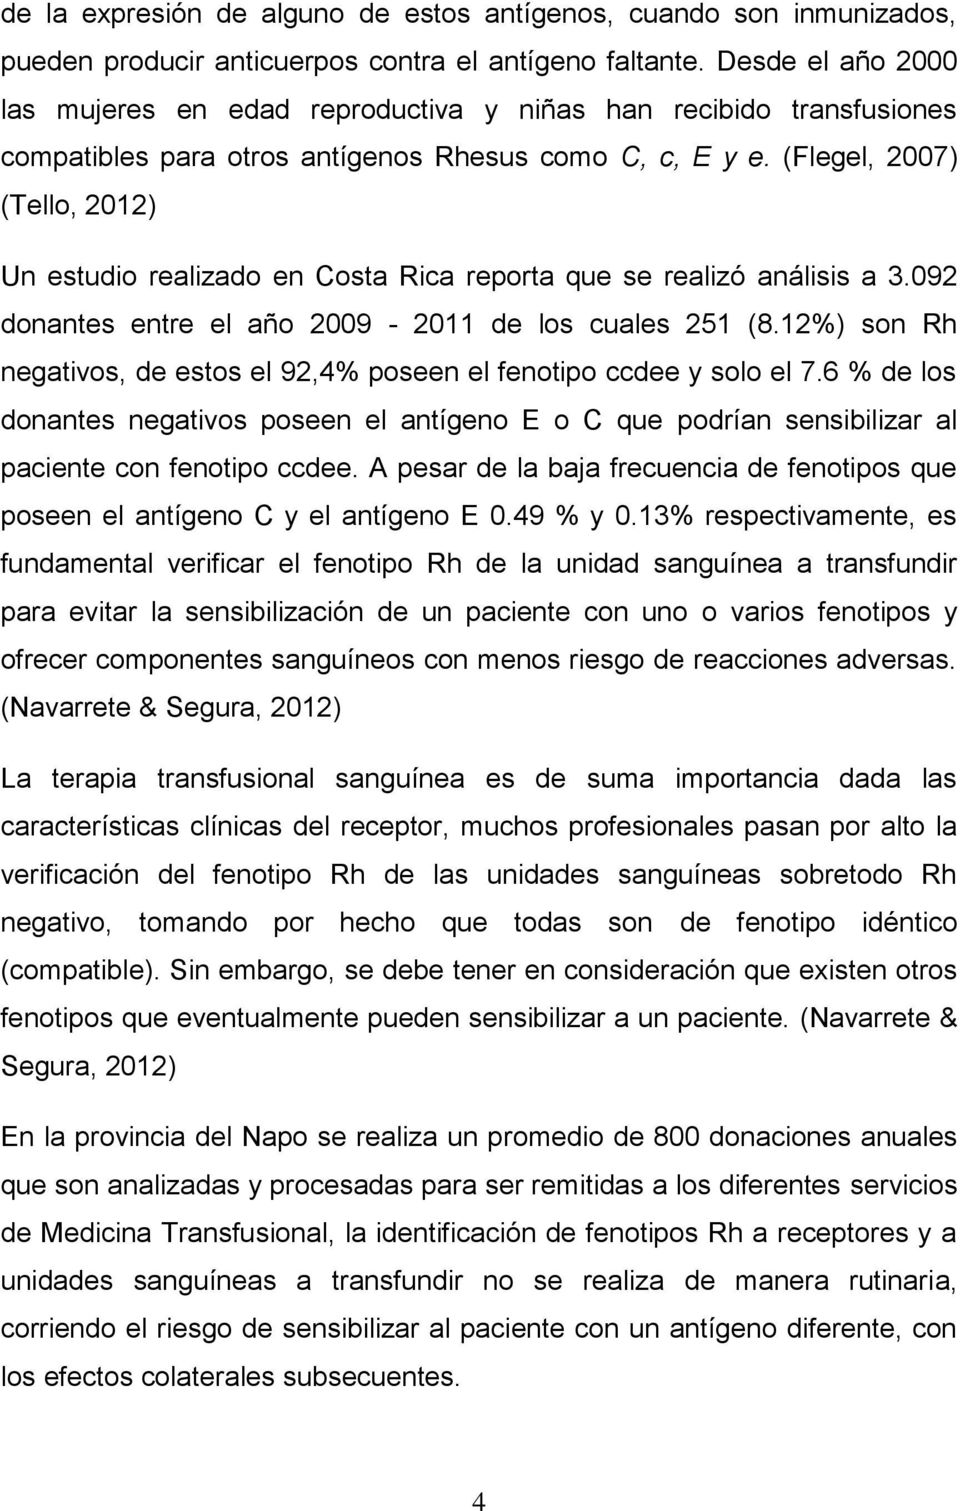 (Flegel, 2007) (Tello, 2012) Un estudio realizado en Costa Rica reporta que se realizó análisis a 3.092 donantes entre el año 2009-2011 de los cuales 251 (8.